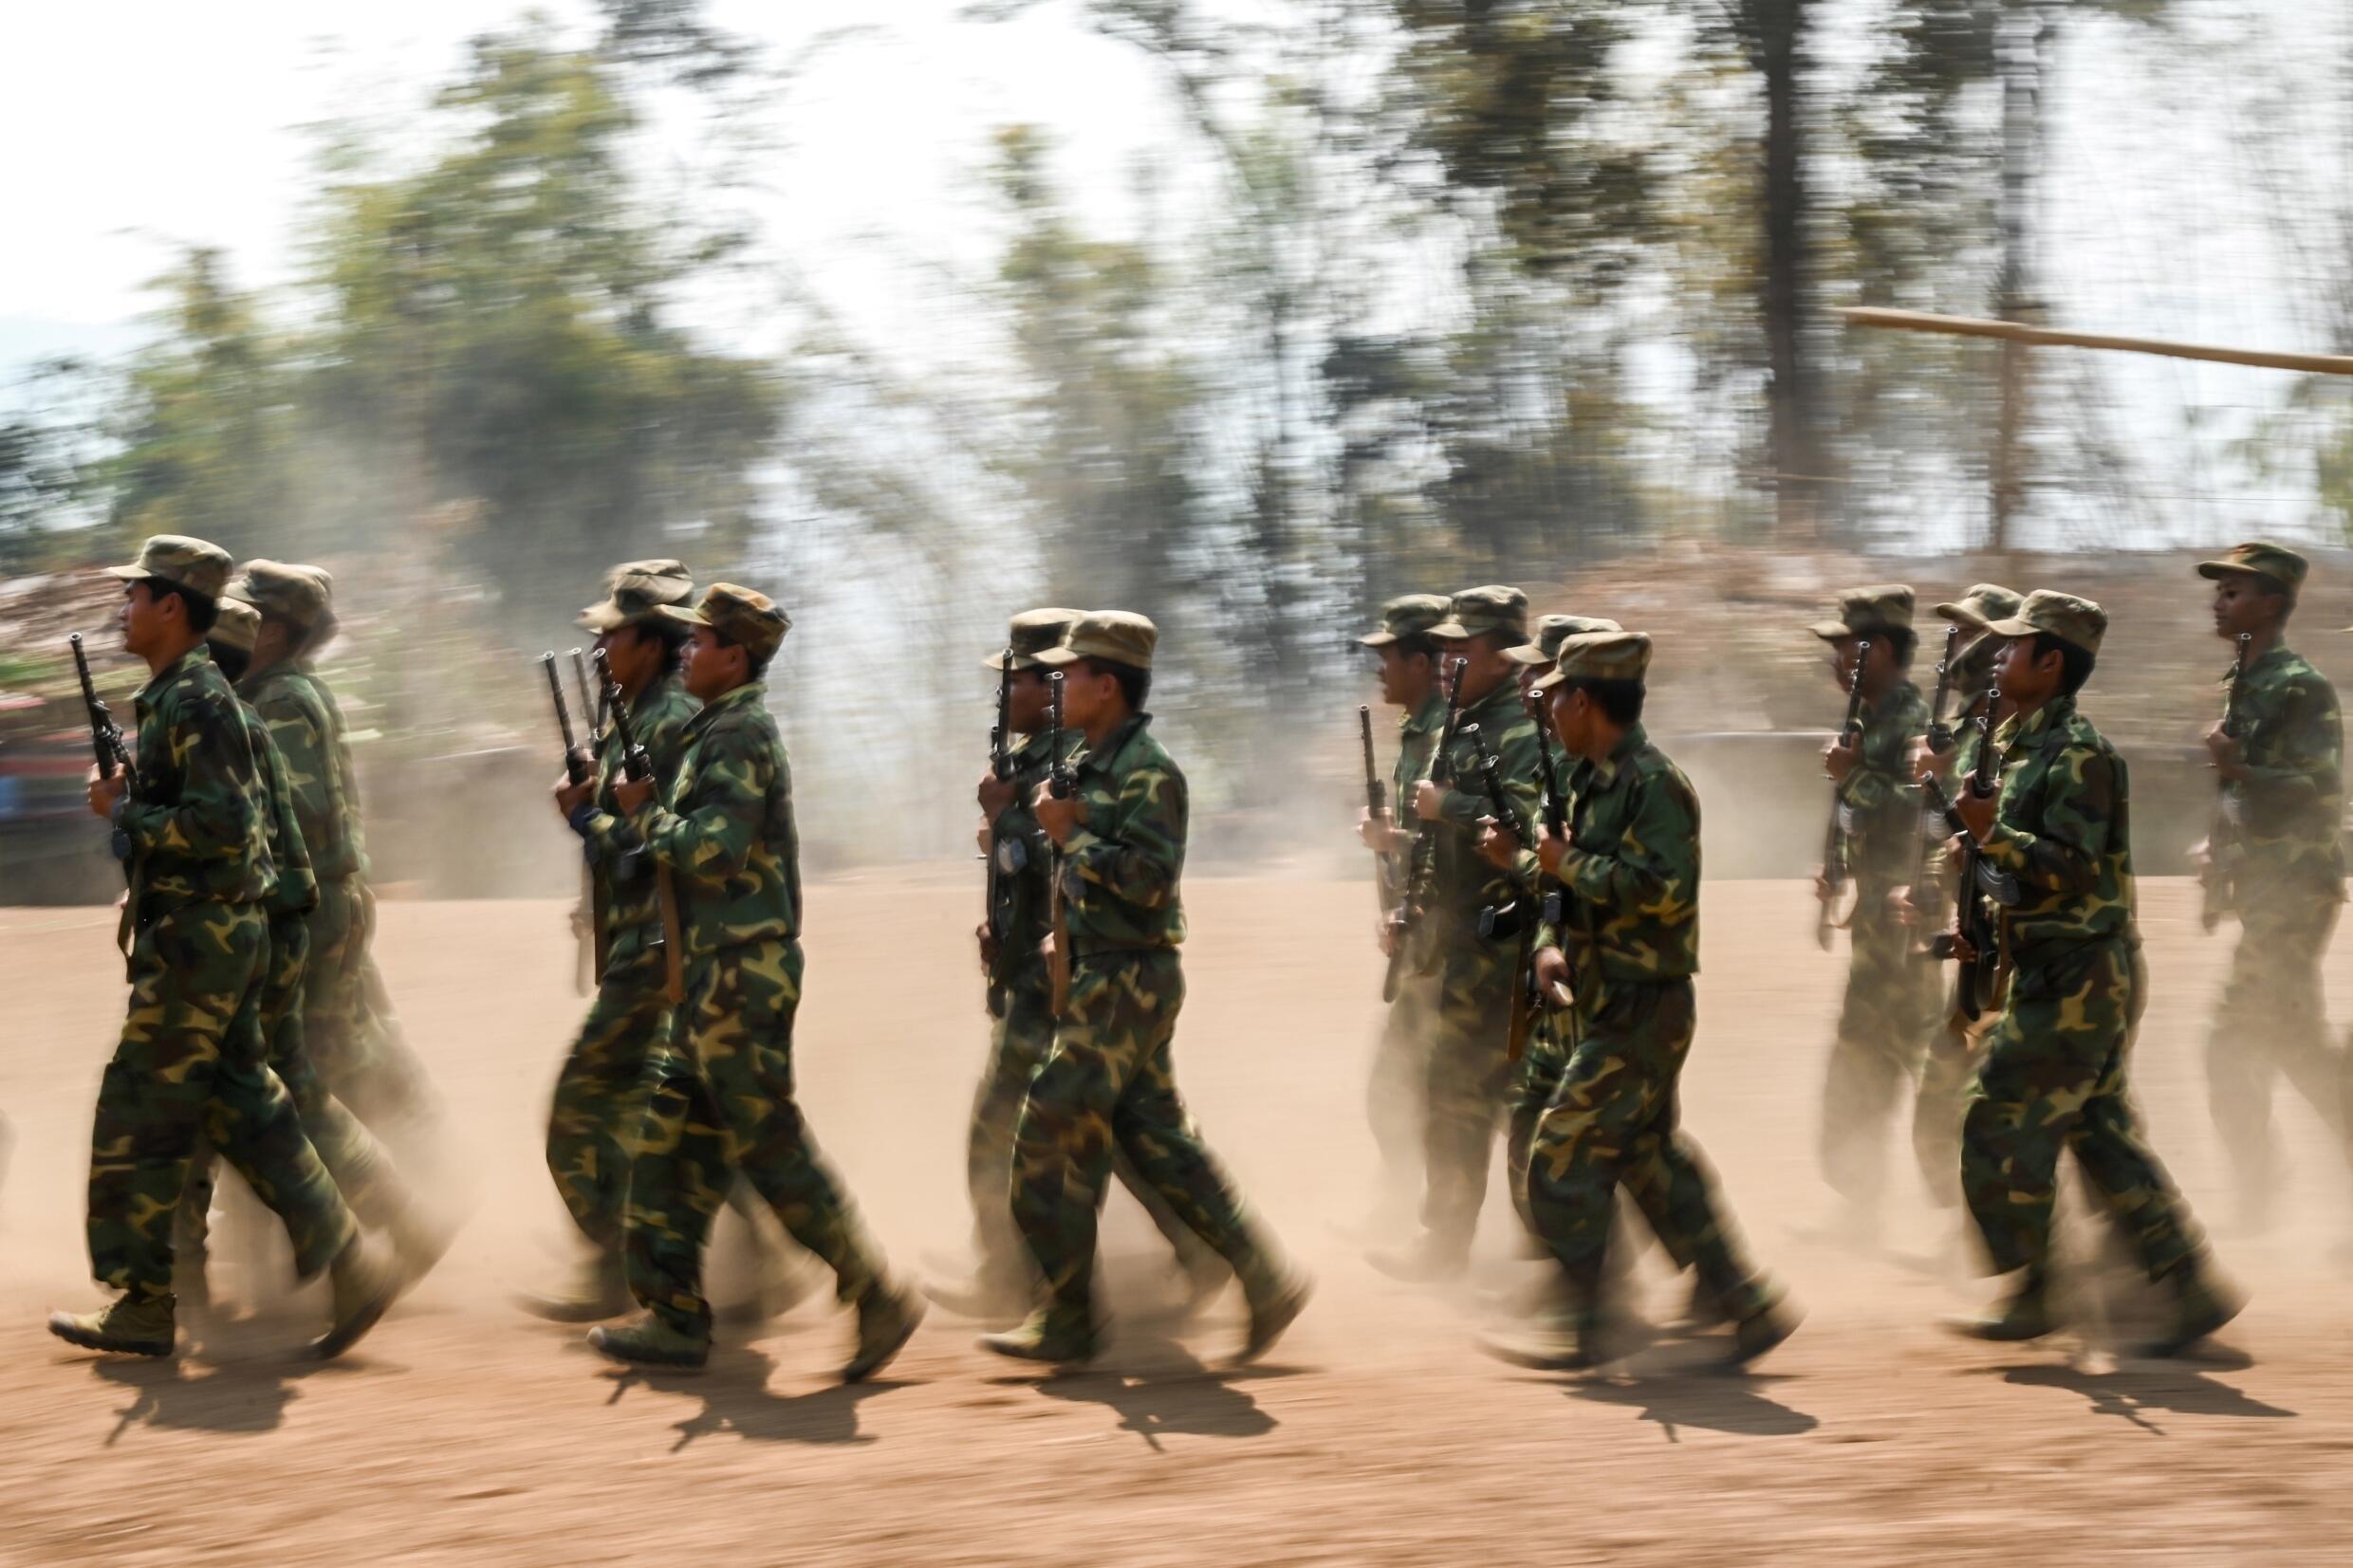 Die Myanmar National Democratic Alliance Army (MNDAA), die Ta'ang National Liberation Army (TNLA) und die Arakan Army (AA) geben an, Dutzende militärische Außenposten besetzt und wichtige Handelsrouten nach China blockiert zu haben.